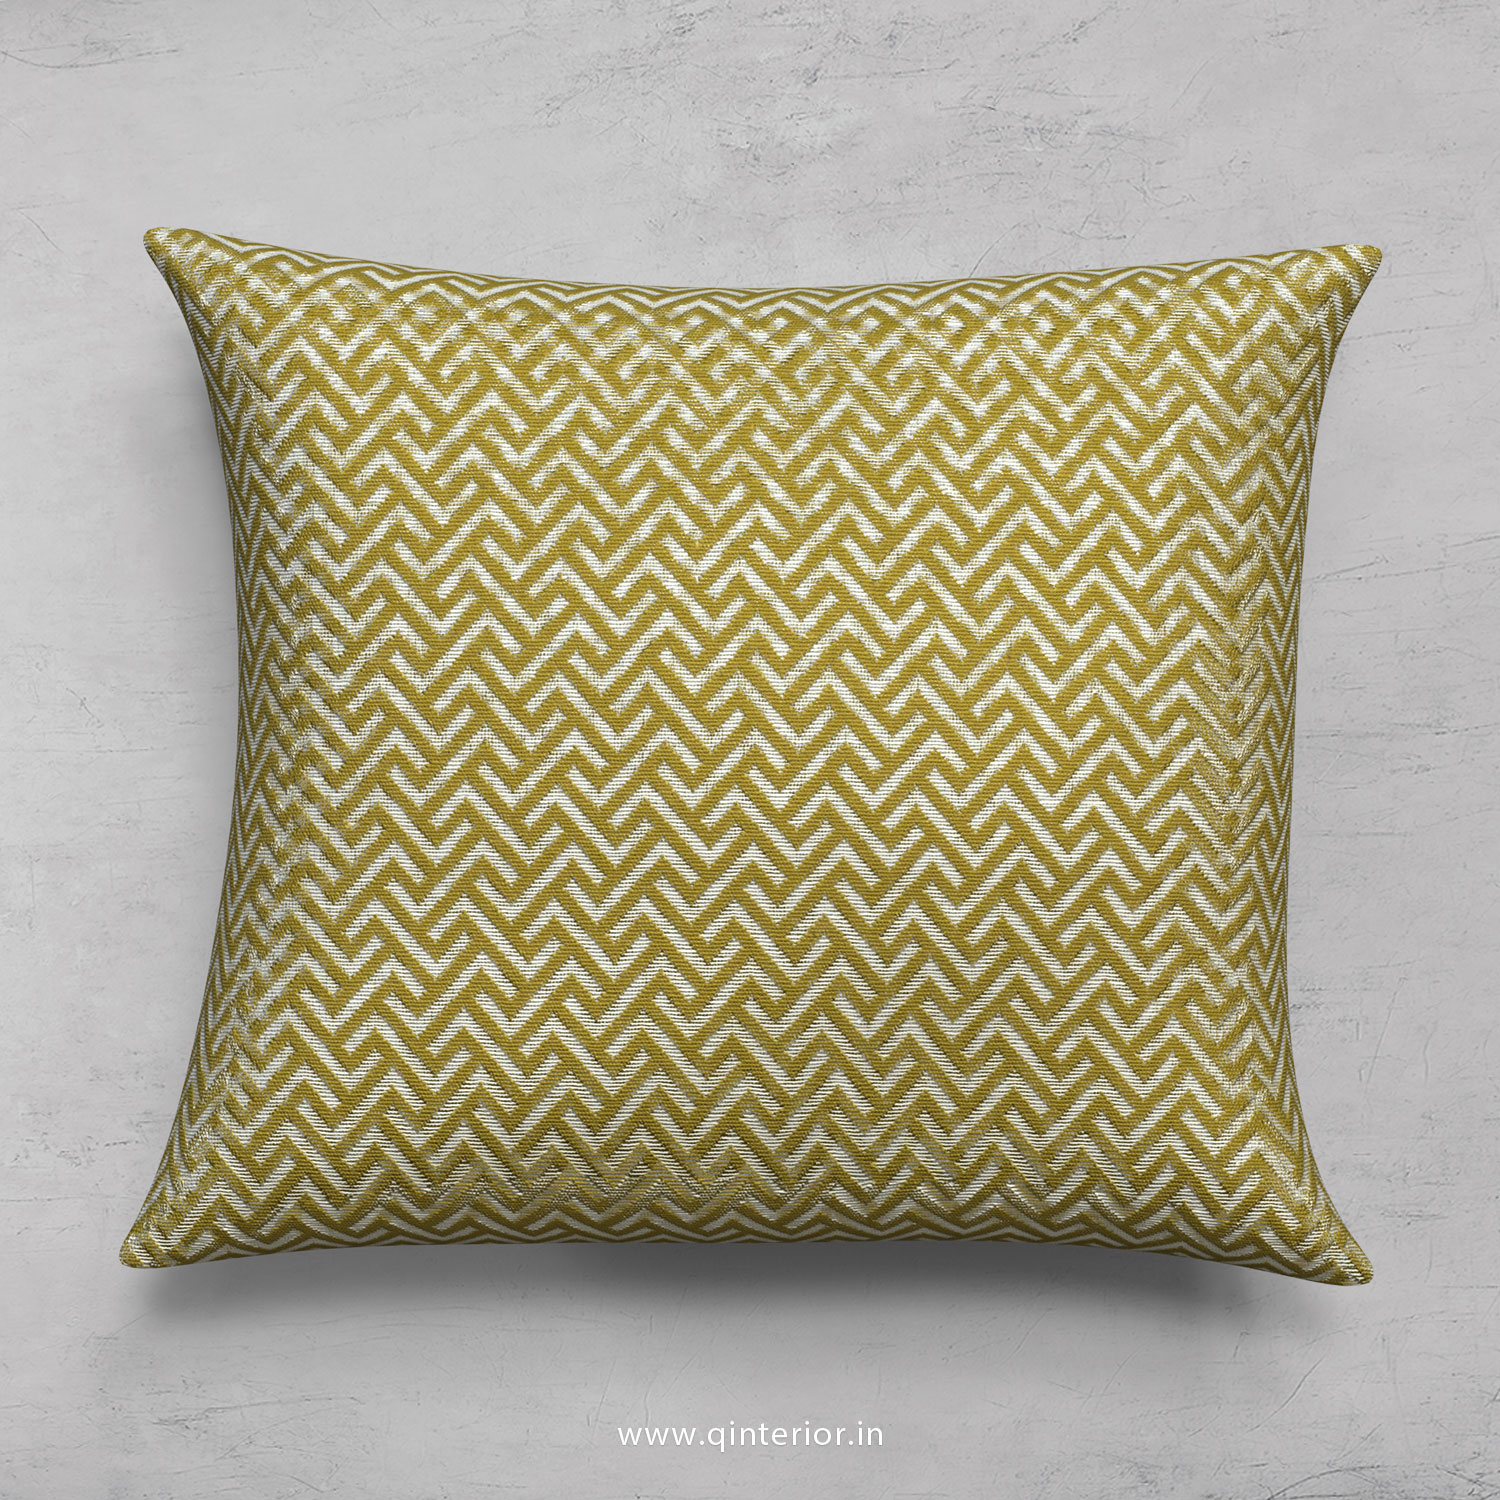 Cushion With Cushion Cover in Jacquard- CUS001 JQ06